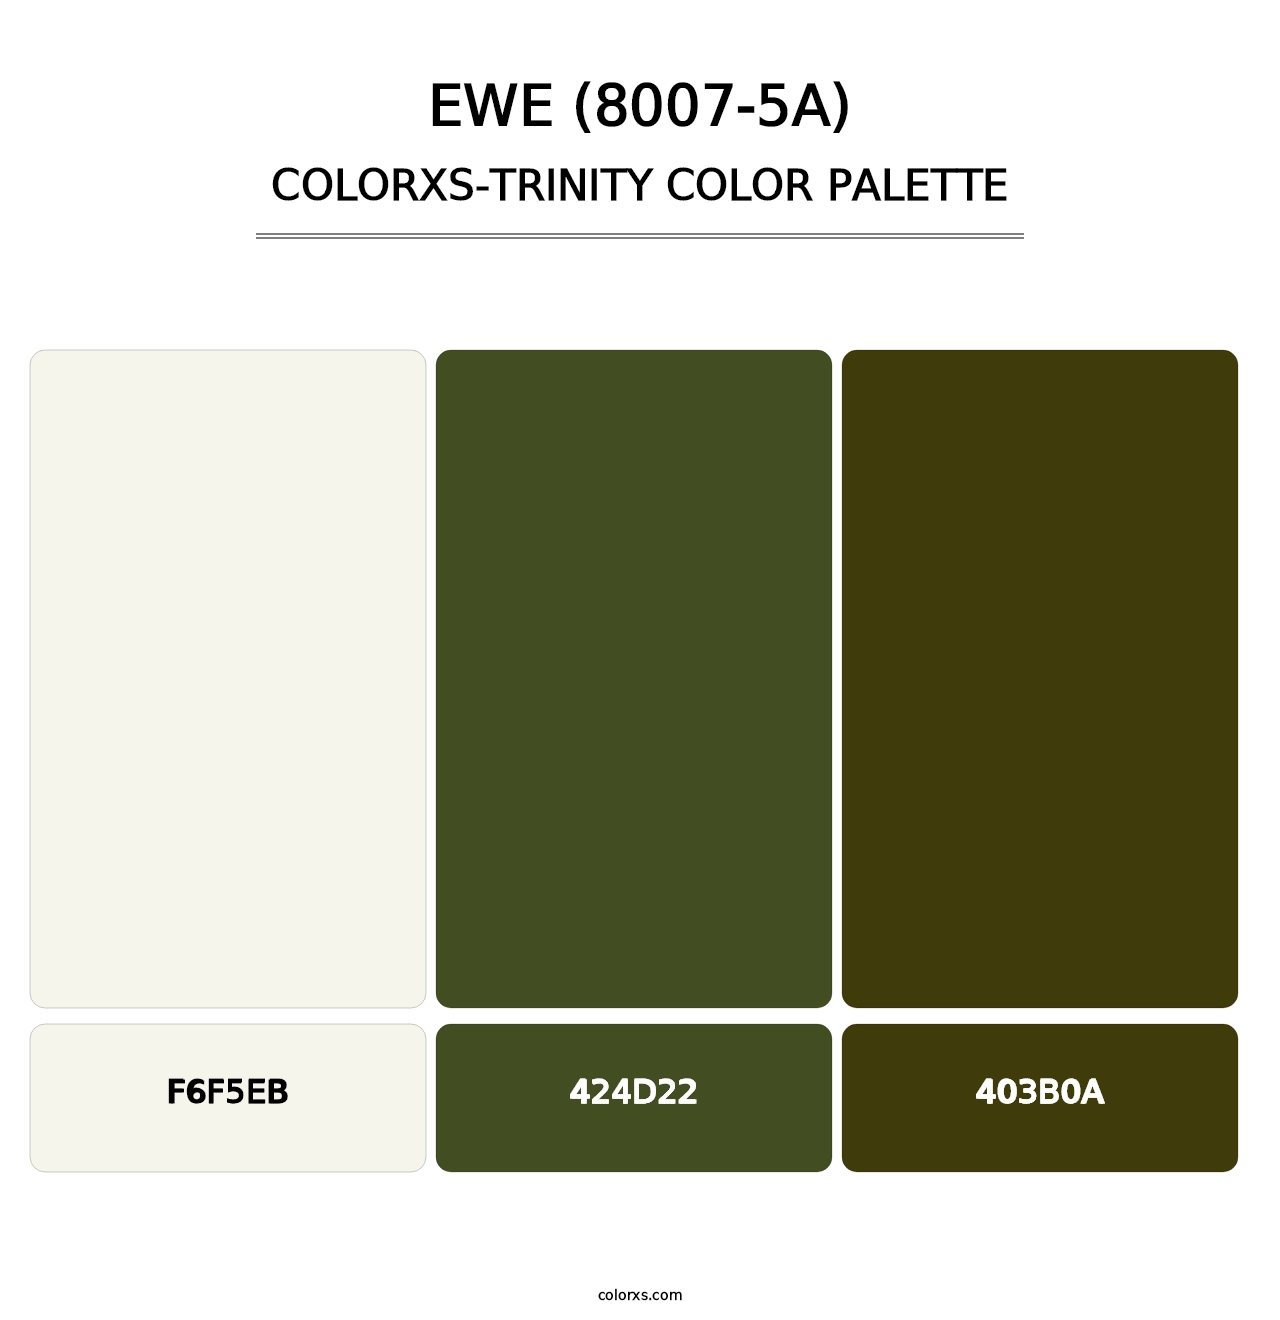 Ewe (8007-5A) - Colorxs Trinity Palette